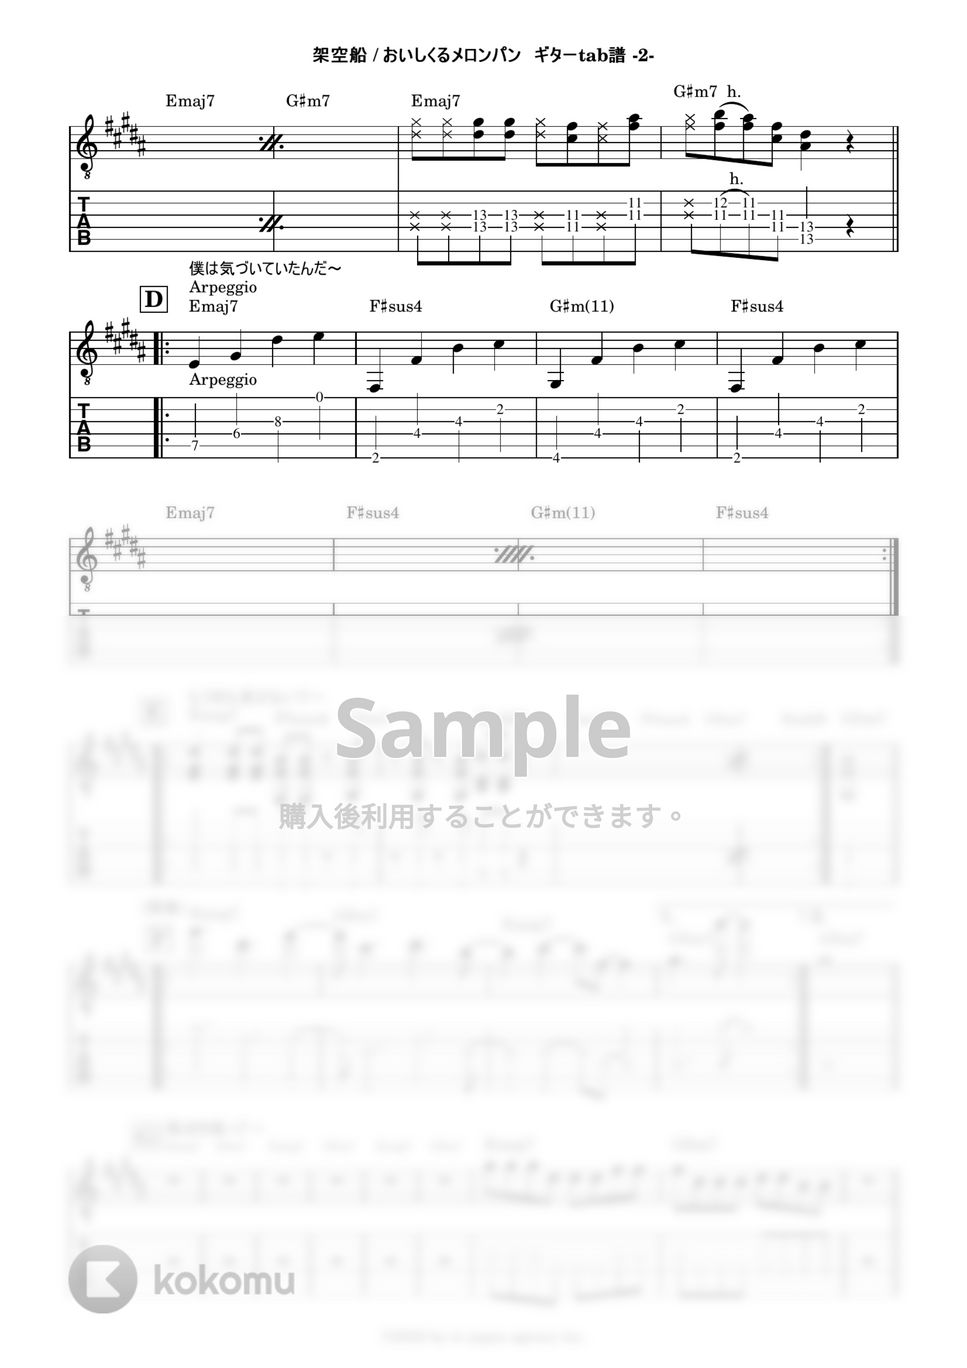 おいしくるメロンパン - 架空船 (ギターtab譜) by 鈴木建作